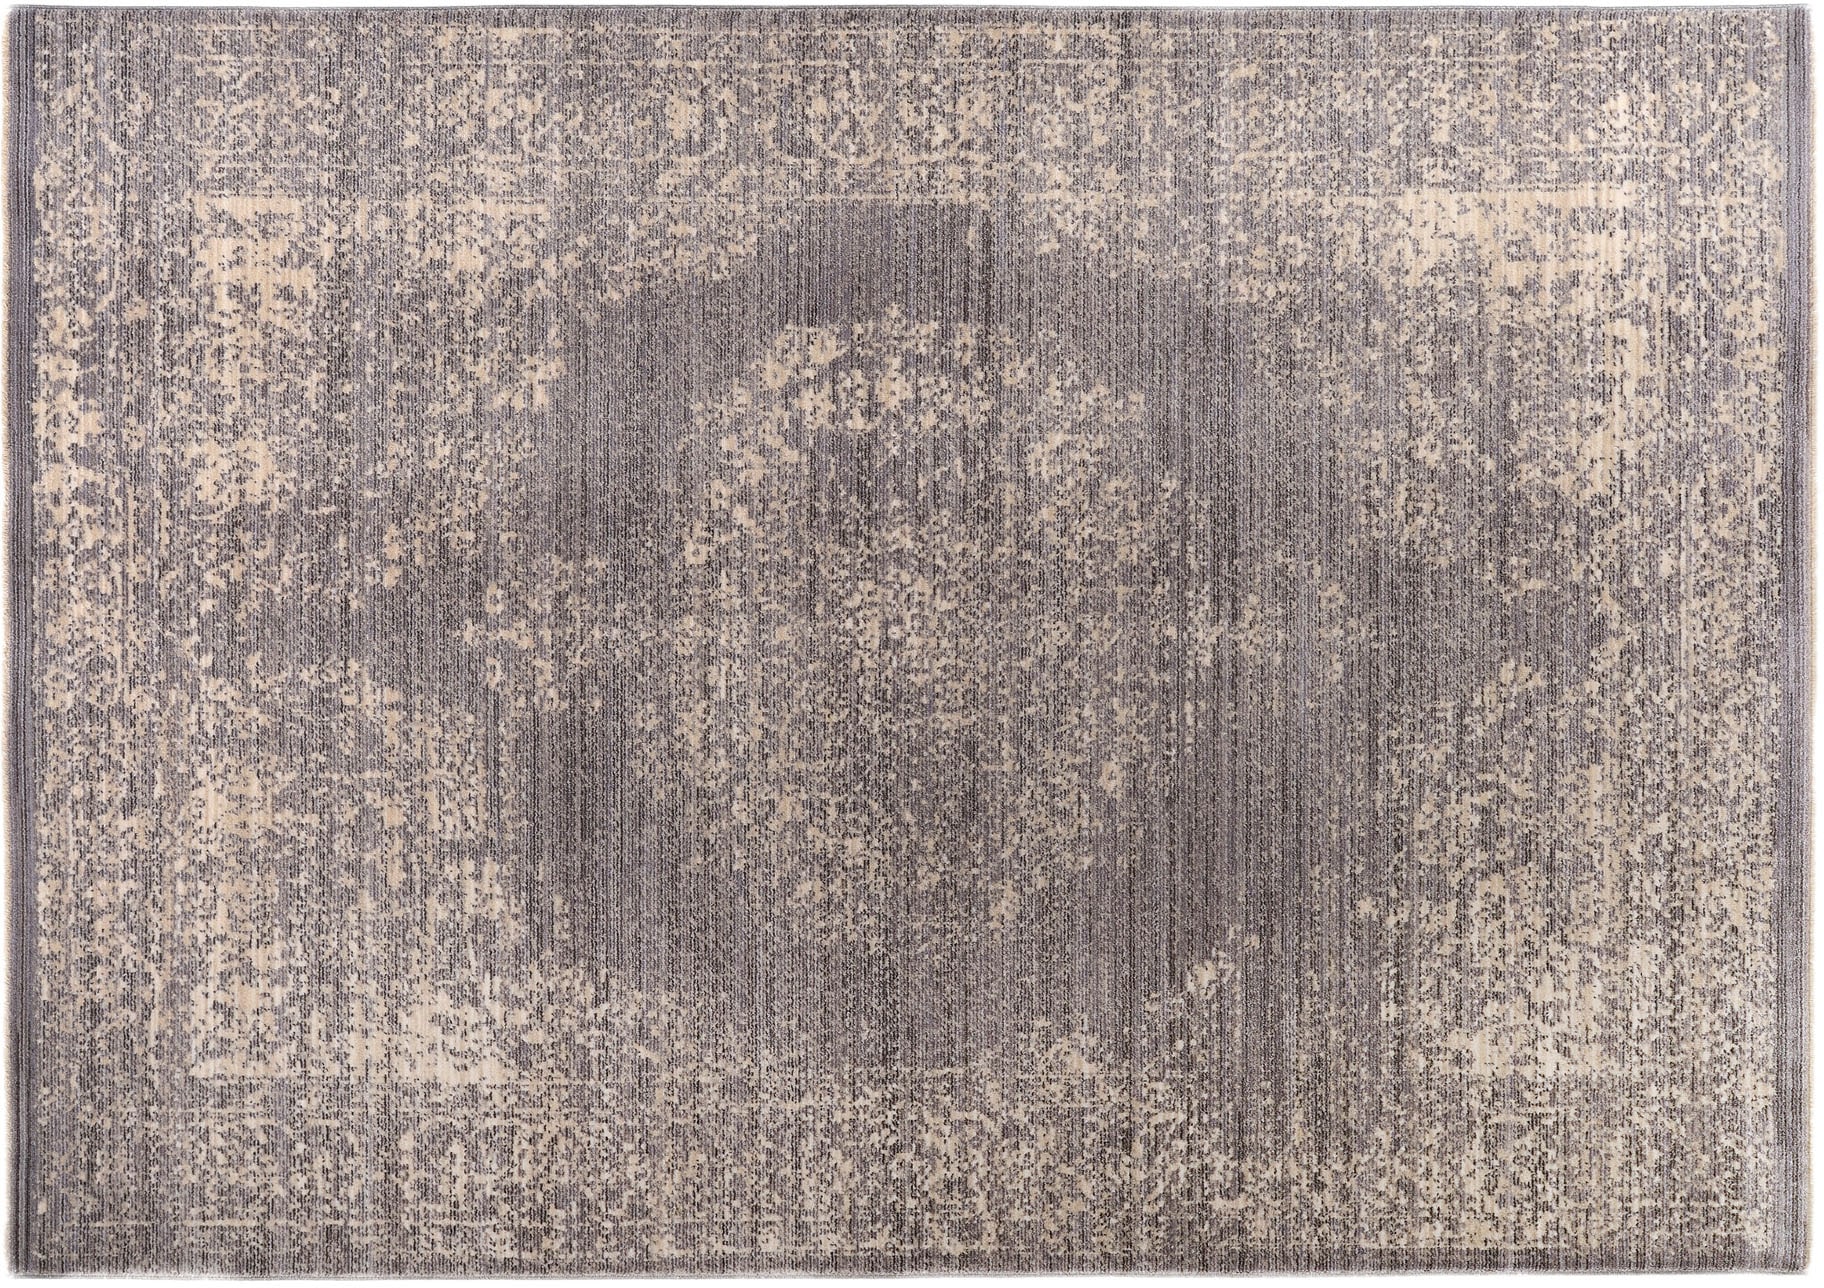 GALLERY M branded Teppich rechteckig, by Wohnzimmer bequem Musterring »Bella«, kaufen